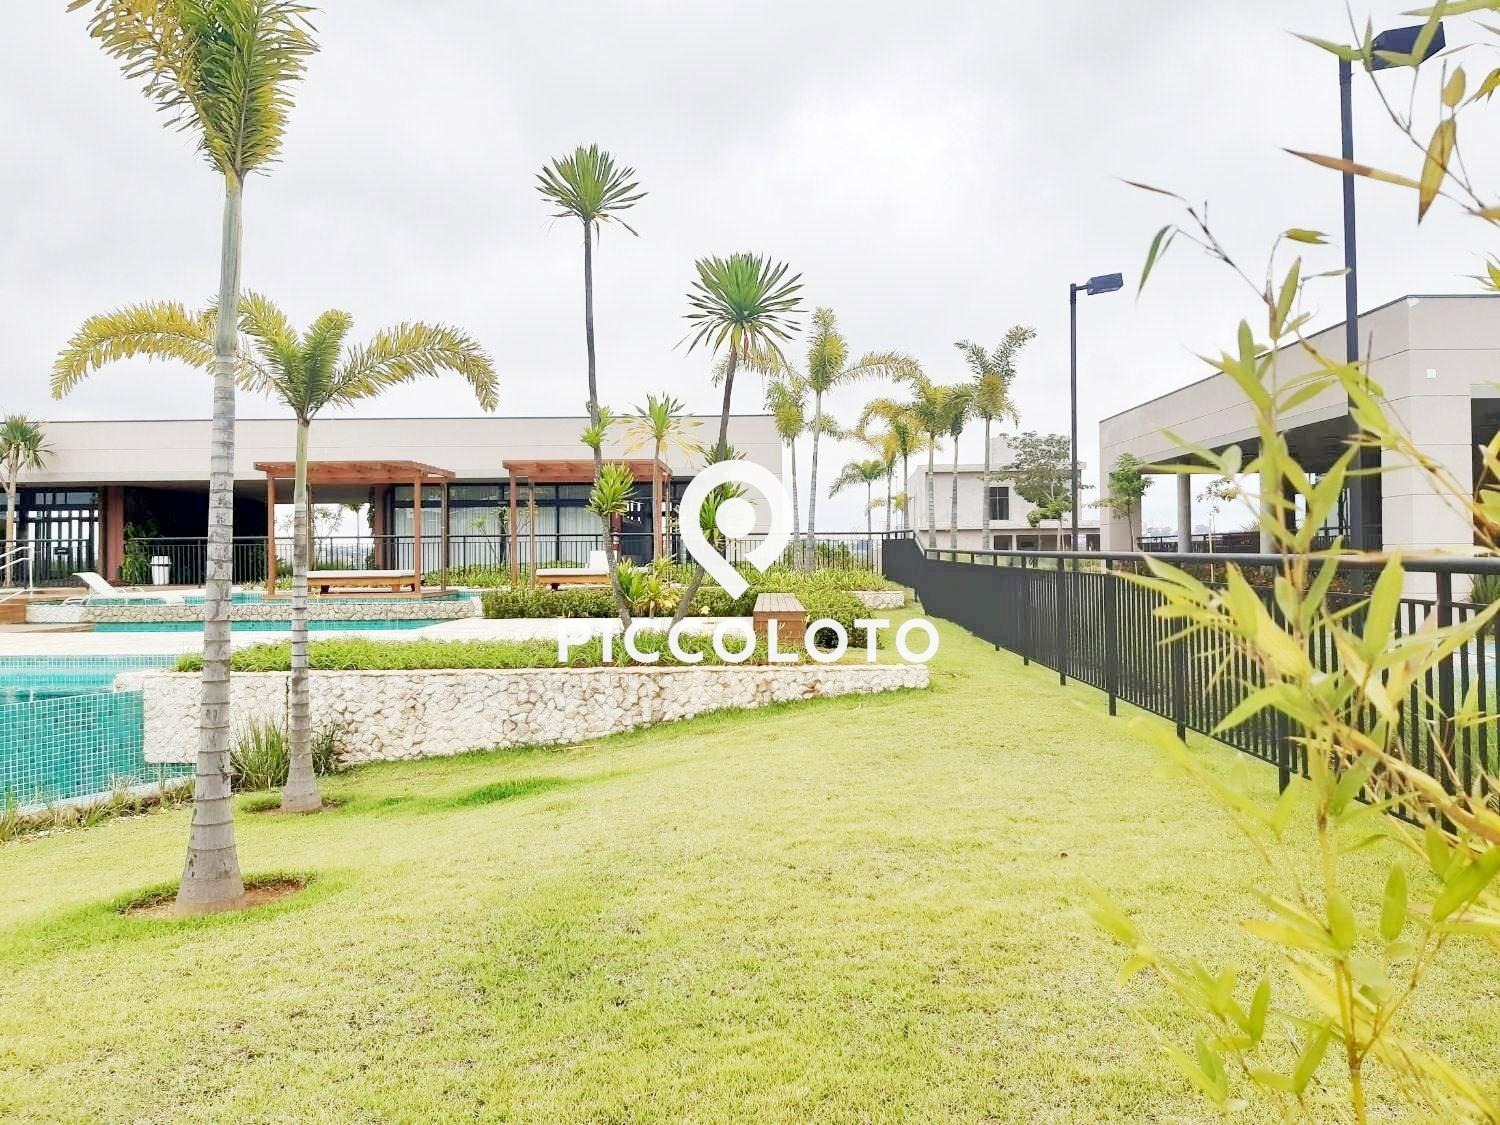 Piccoloto -Casa à venda no Parque Brasil em Paulinia